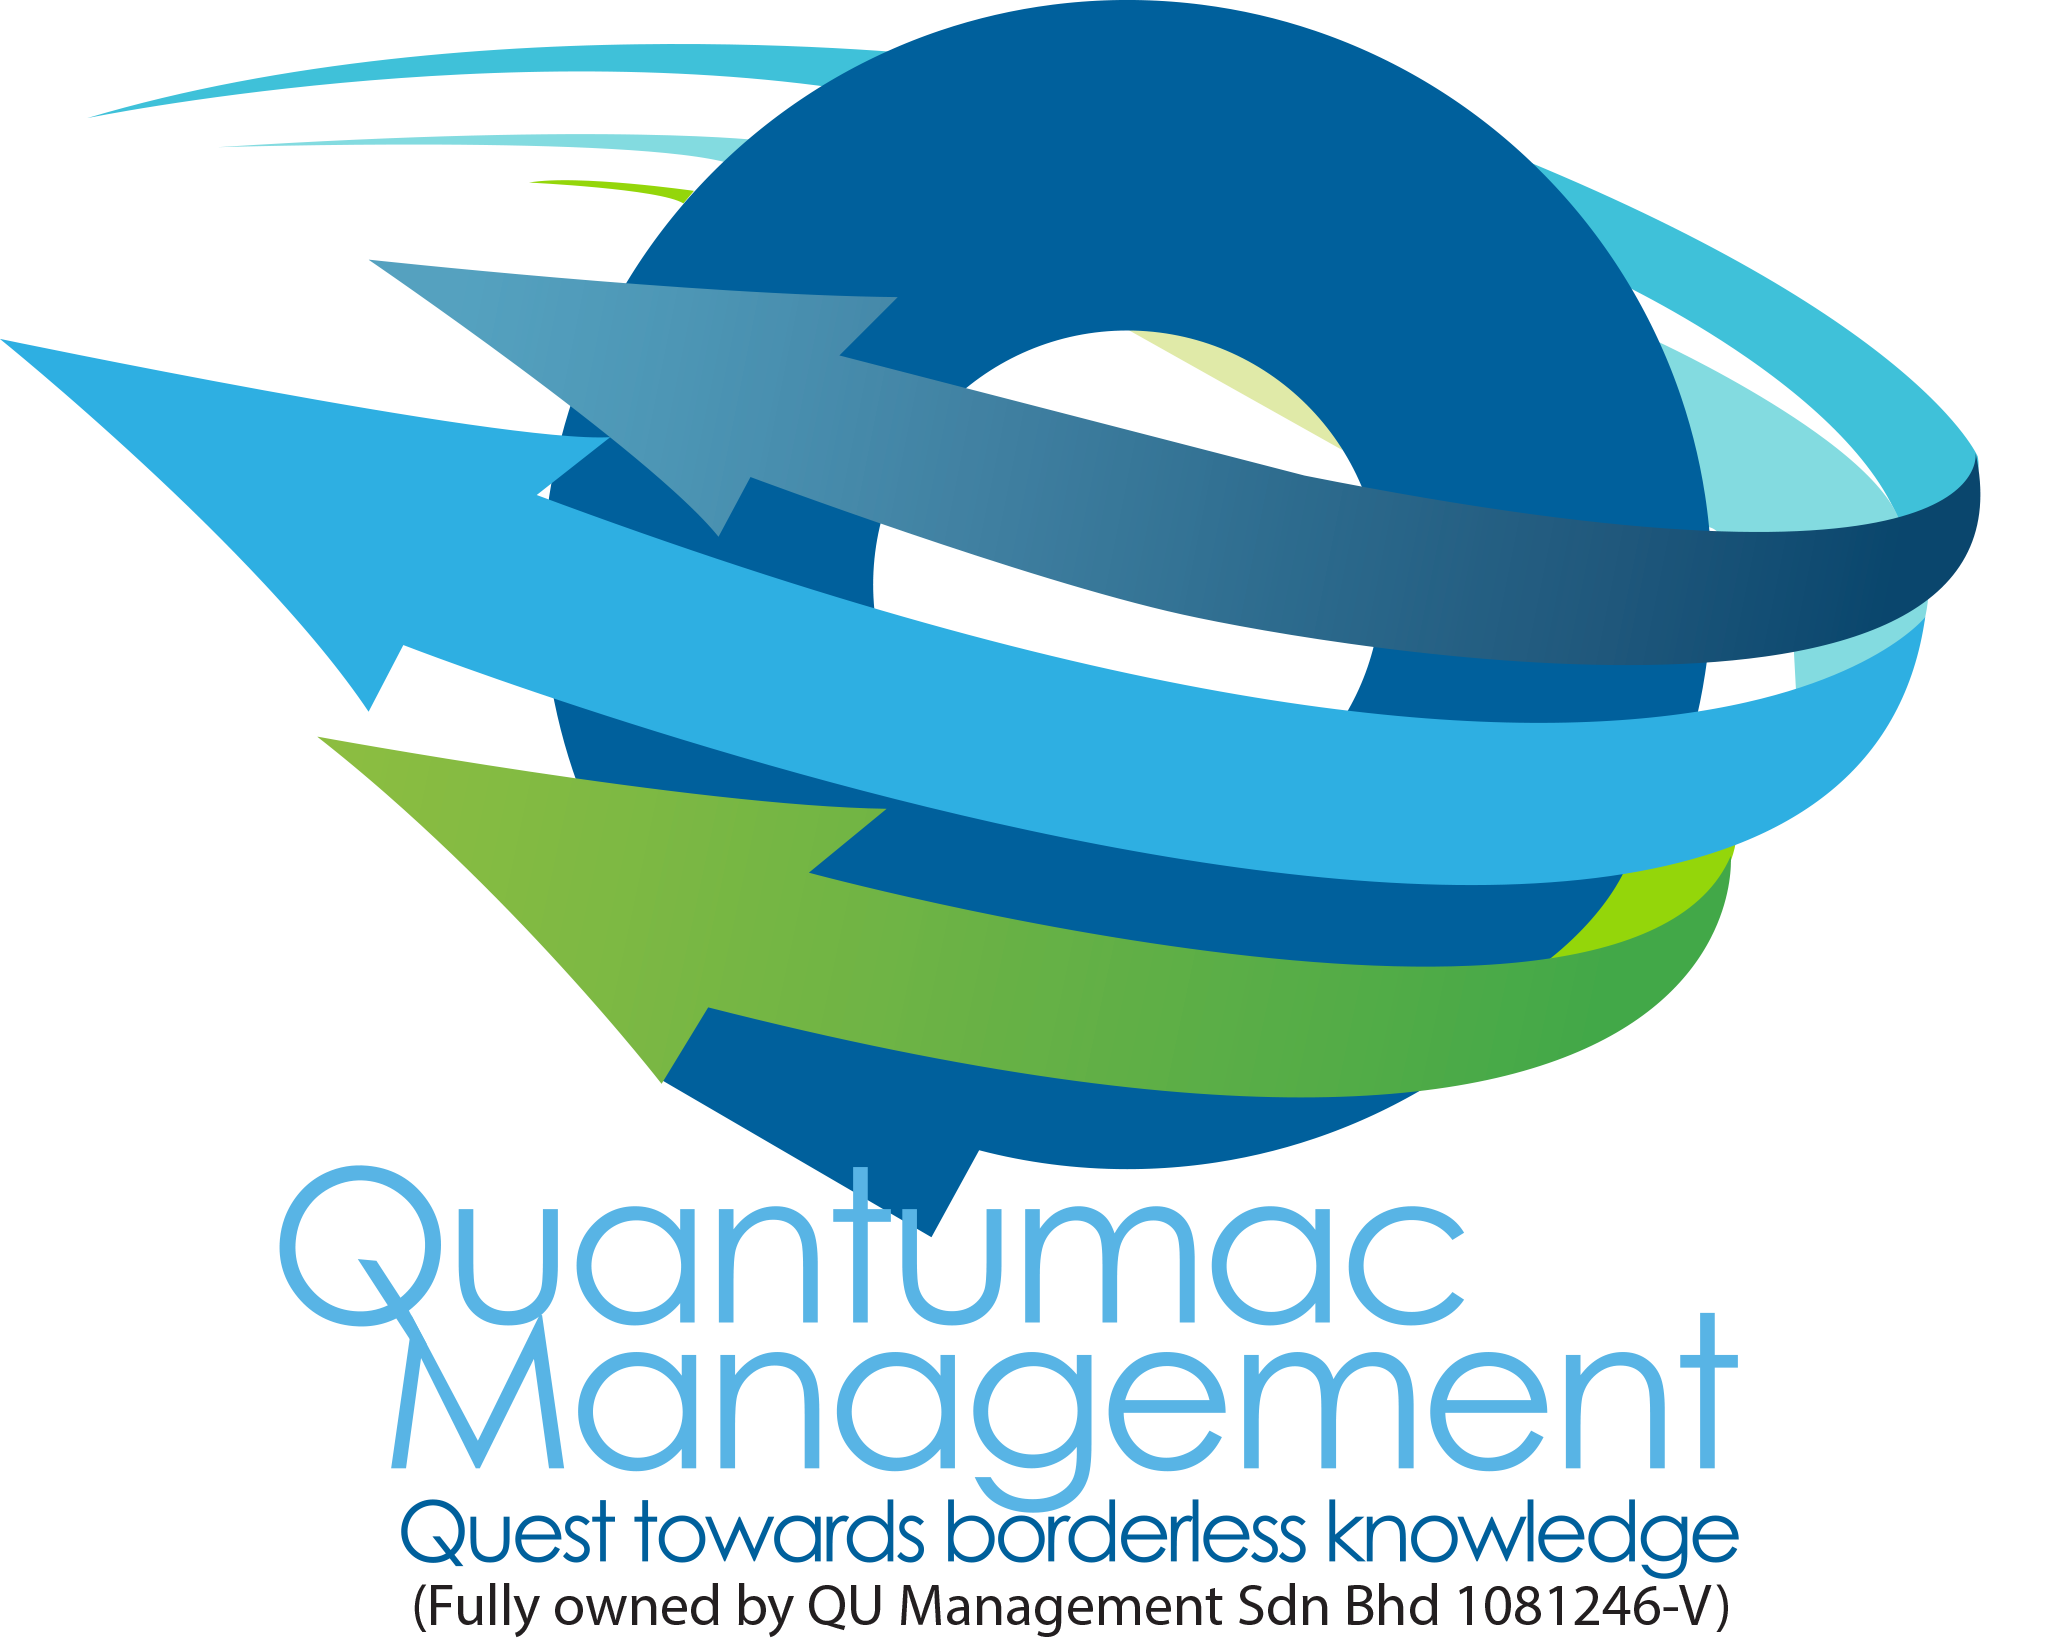 Quantumac management workshop post. Law clipart labour law